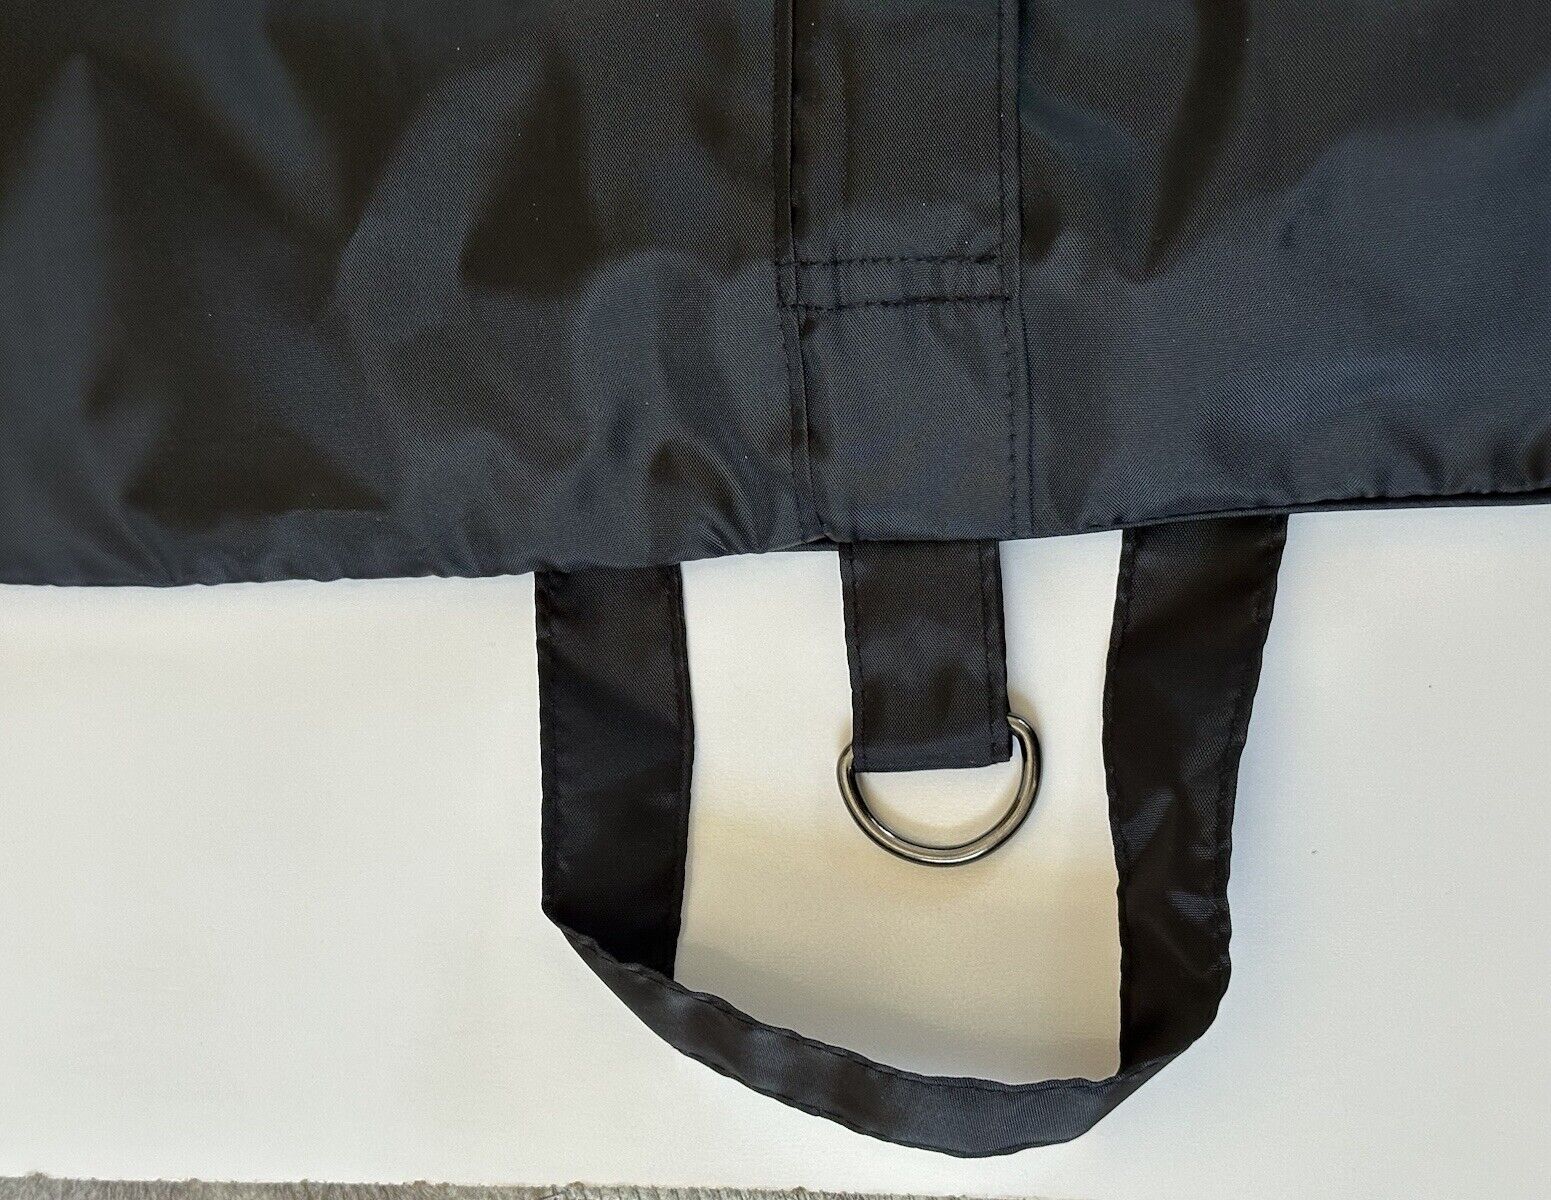 Brand New Versace Suit/Jacket/Vest Foldable Garment Bag Black 66”L x 23.5”W